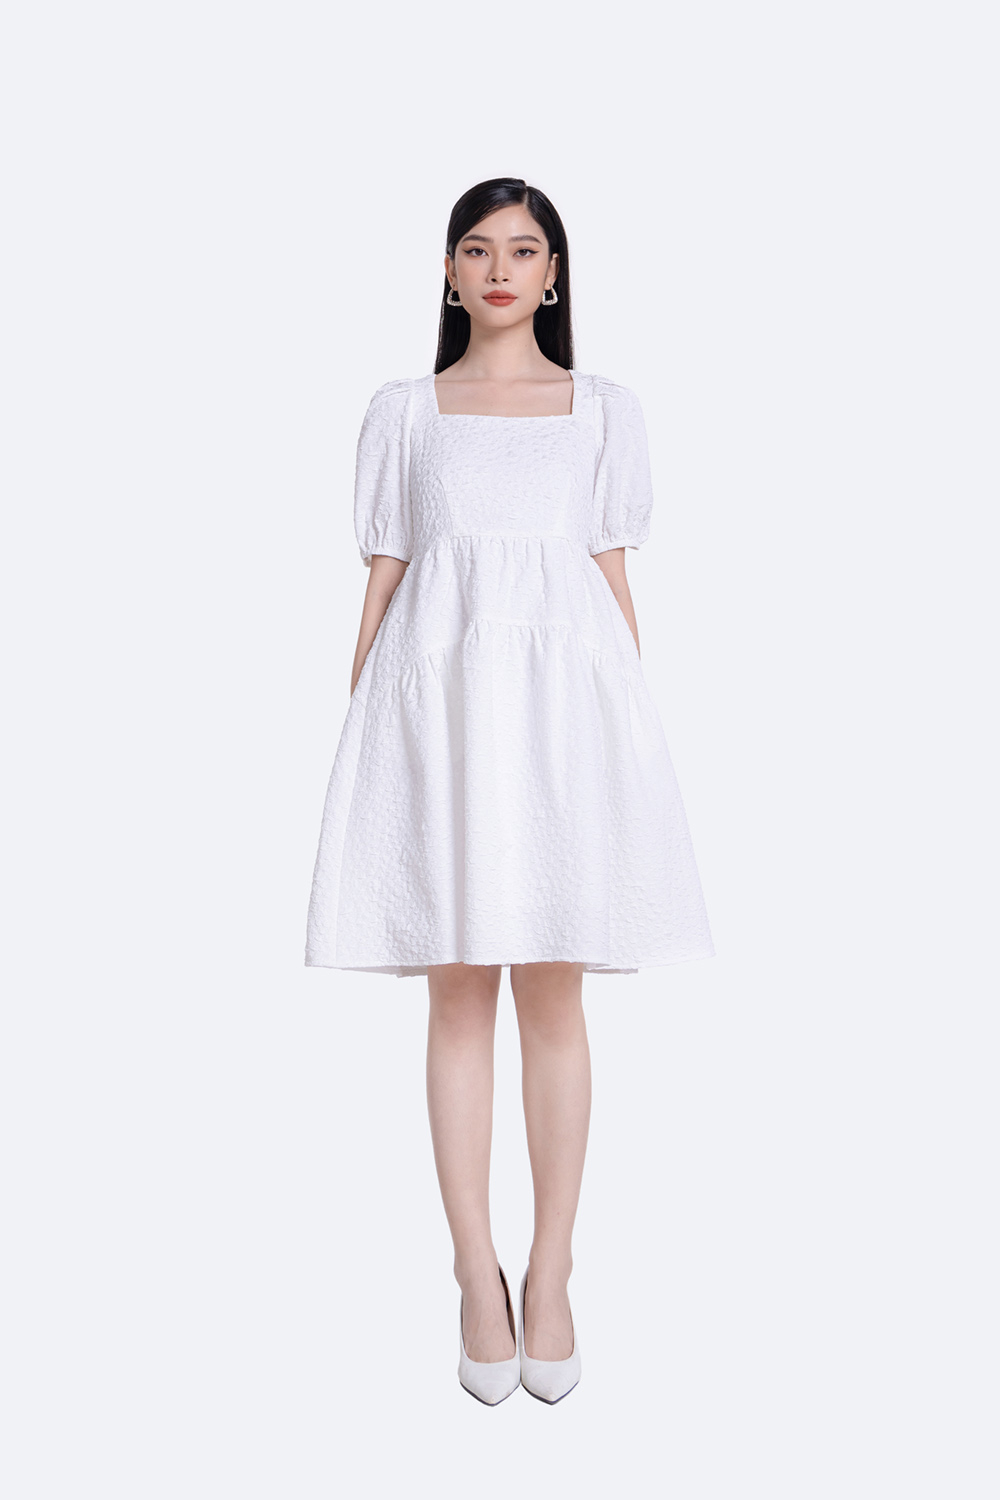 Đầm trắng cổ vuông tay dài phối ren hạt  Váy trắng cổ vuông tay dài phối  ren hạt đầm dự tiệc hình thật sẵn  ShopeeCheckcom